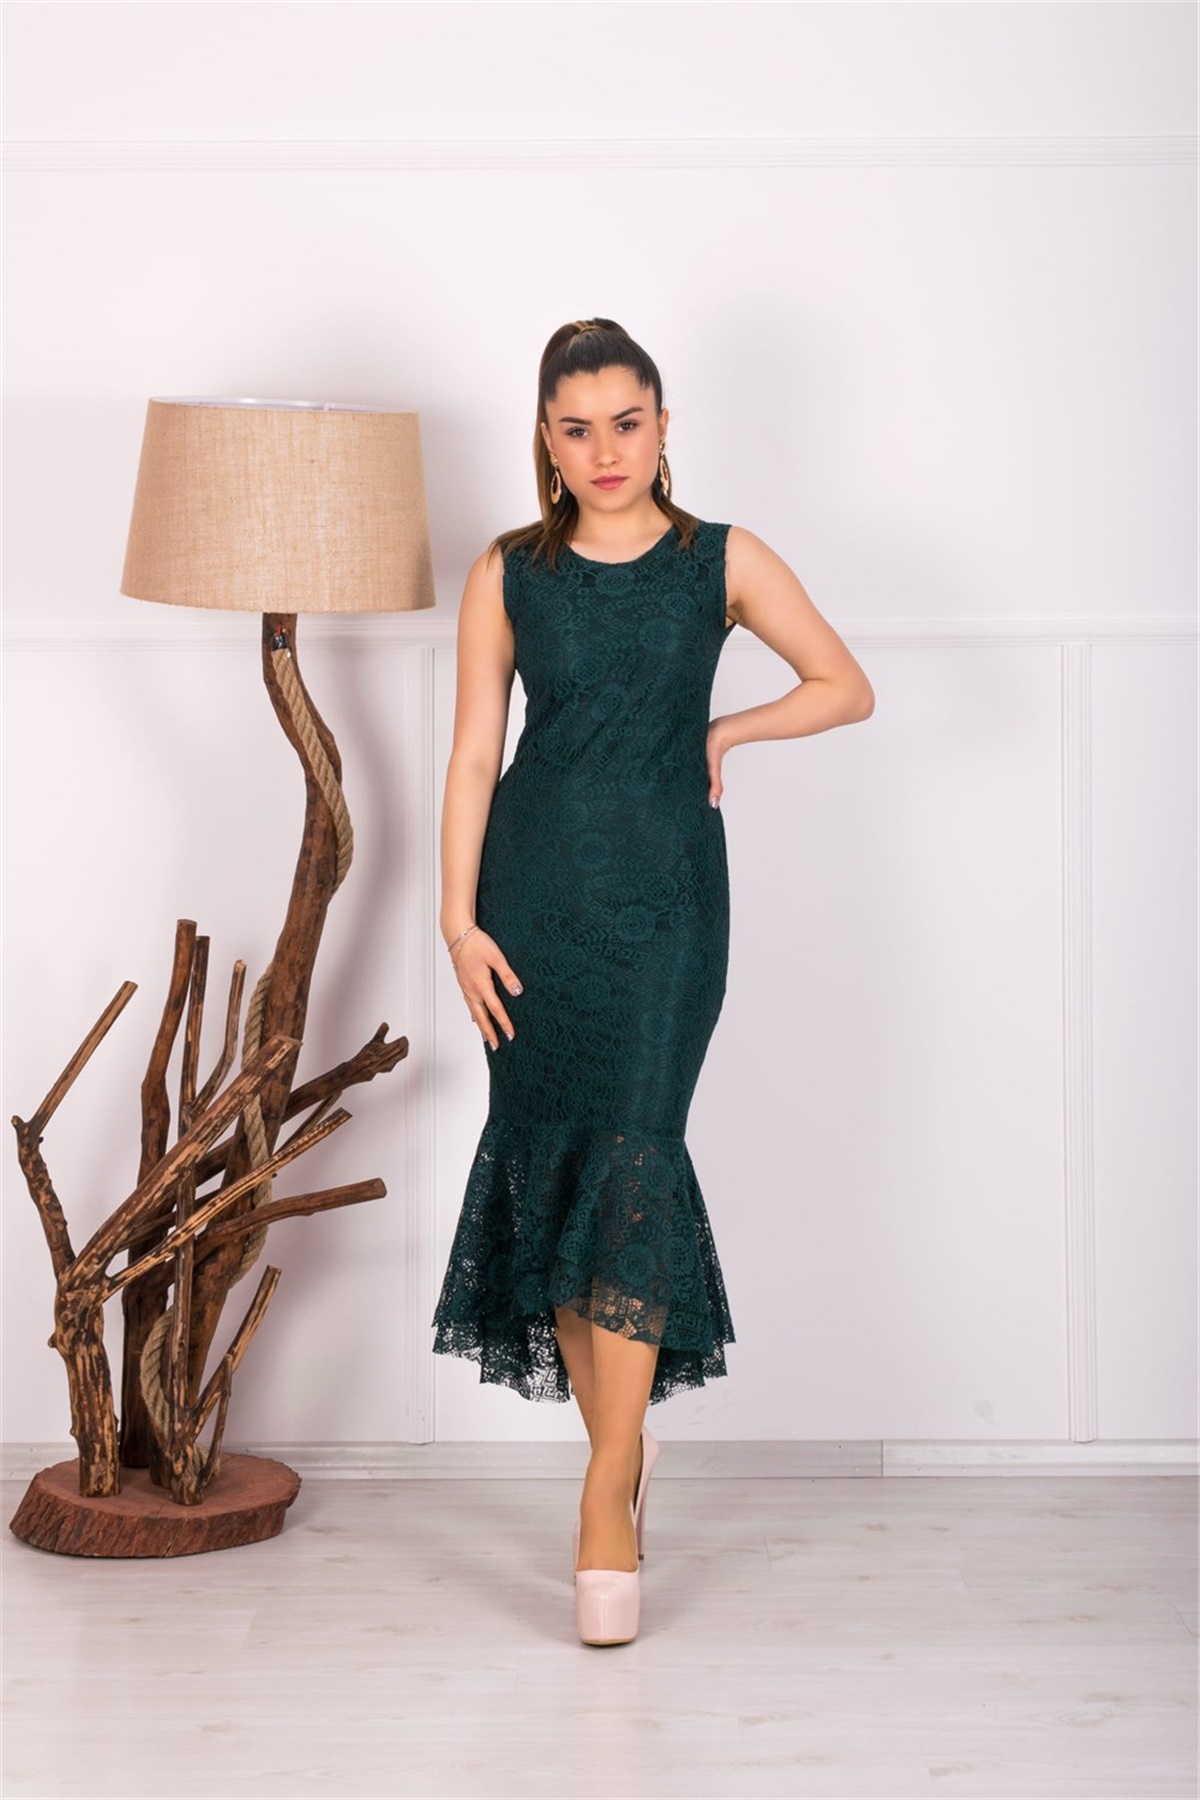 Full Dantel Eteği Volanlı Elbise - Zümrüt Yeşil | Giyim Masalı